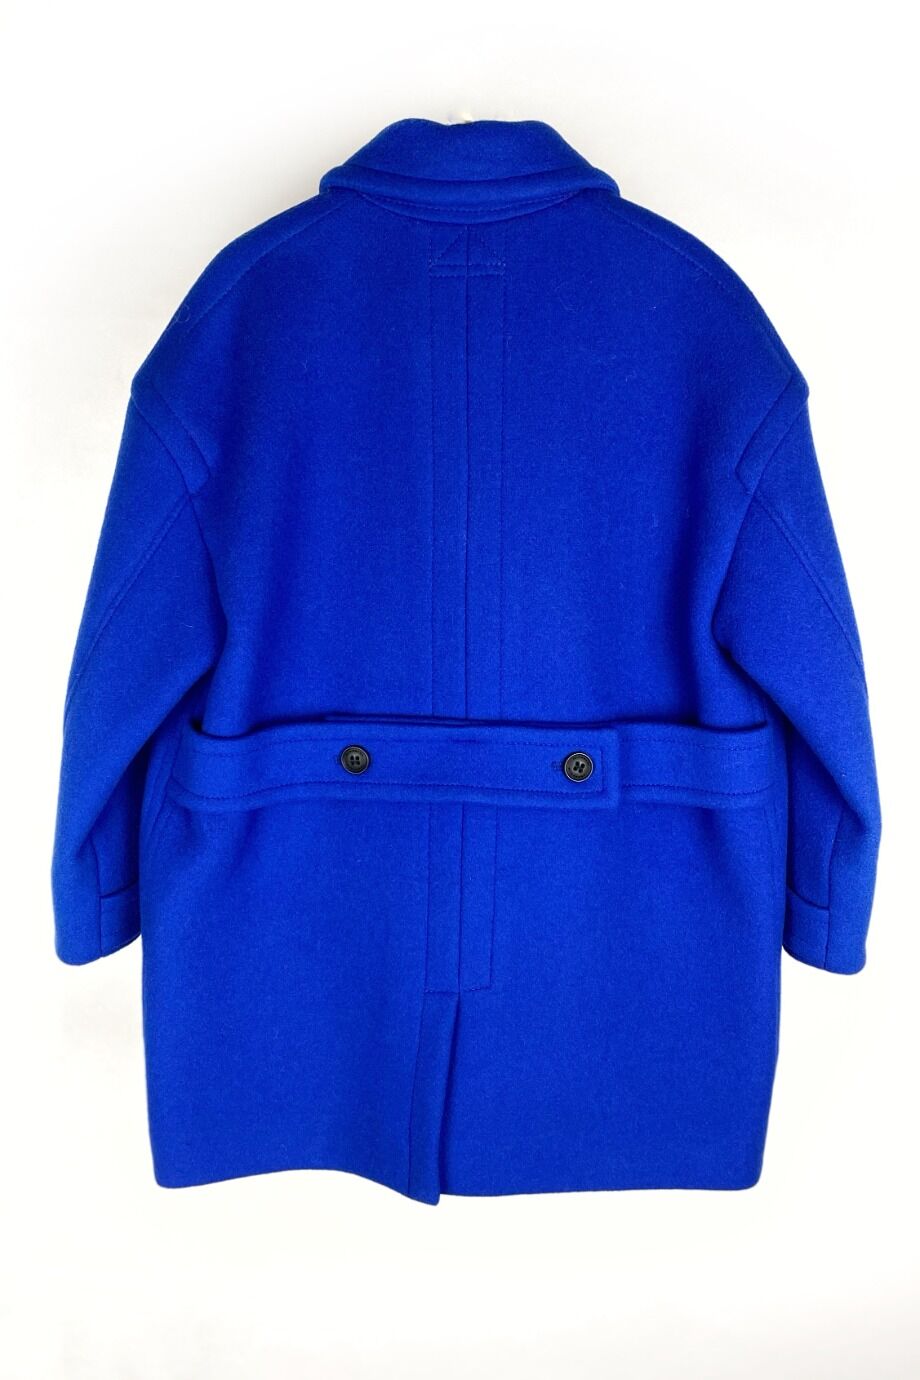 image 3 Детское пальто синего цвета на кнопках